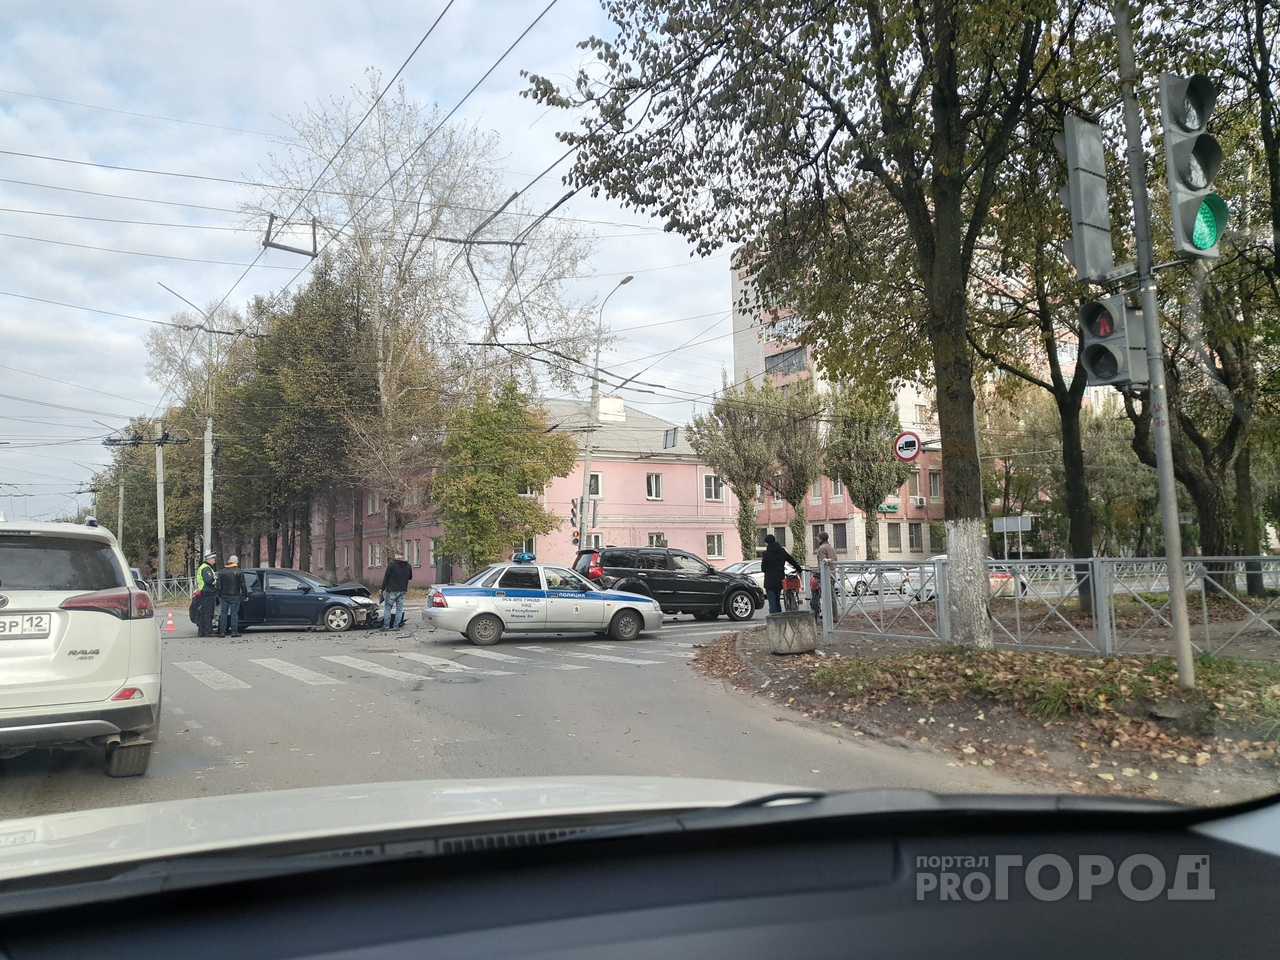 Полицейские рассказали подробности ДТП в Йошкар-Оле, где столкнулись легковушка и внедорожник